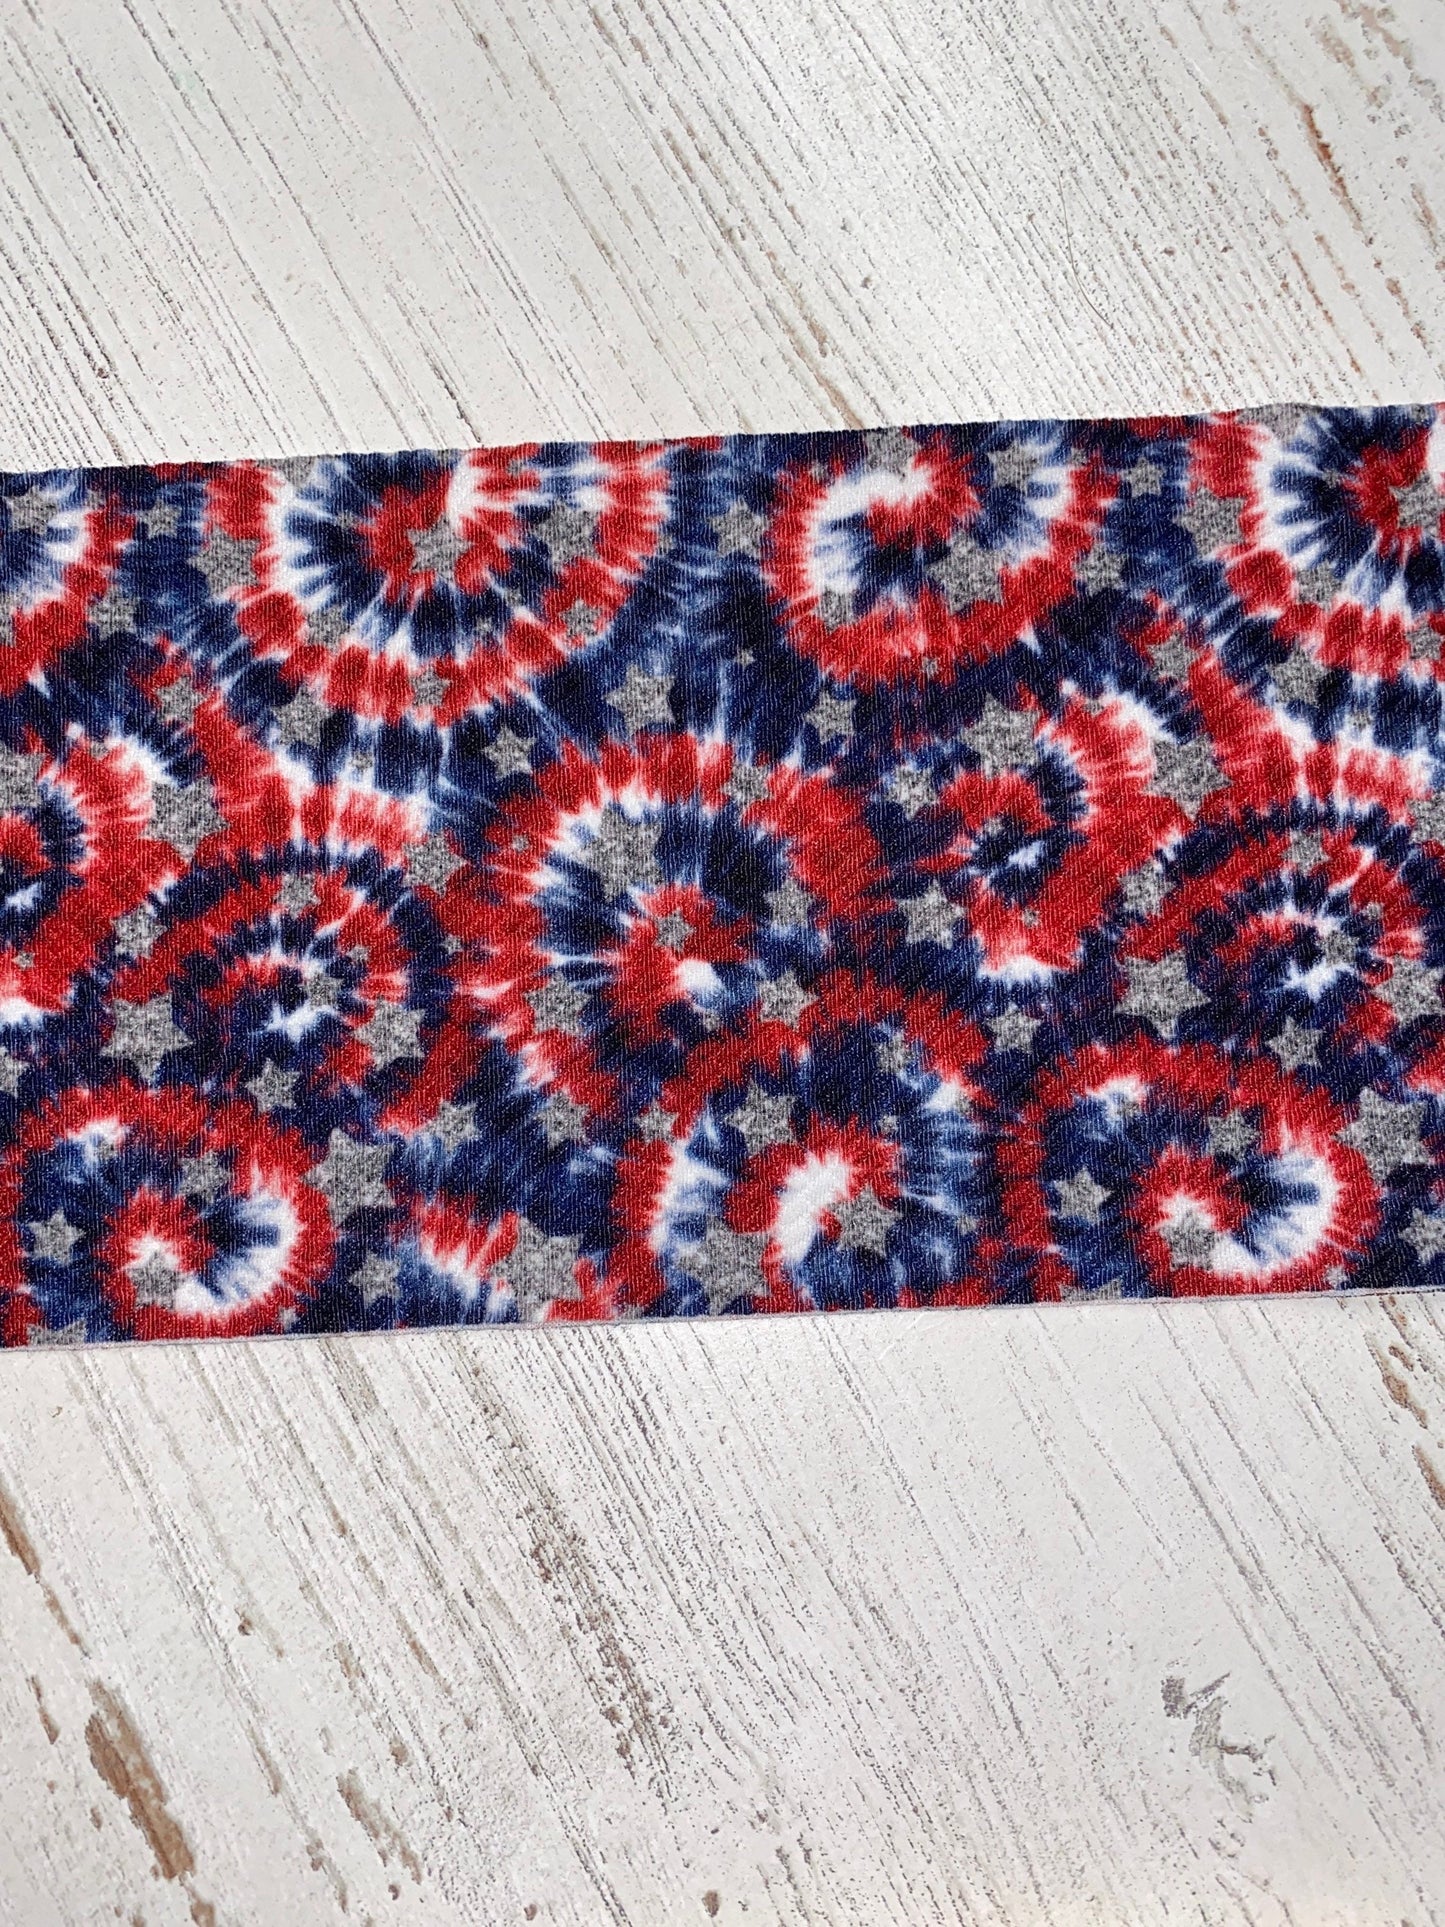 Patriotic tie dye headwrap, messy bow